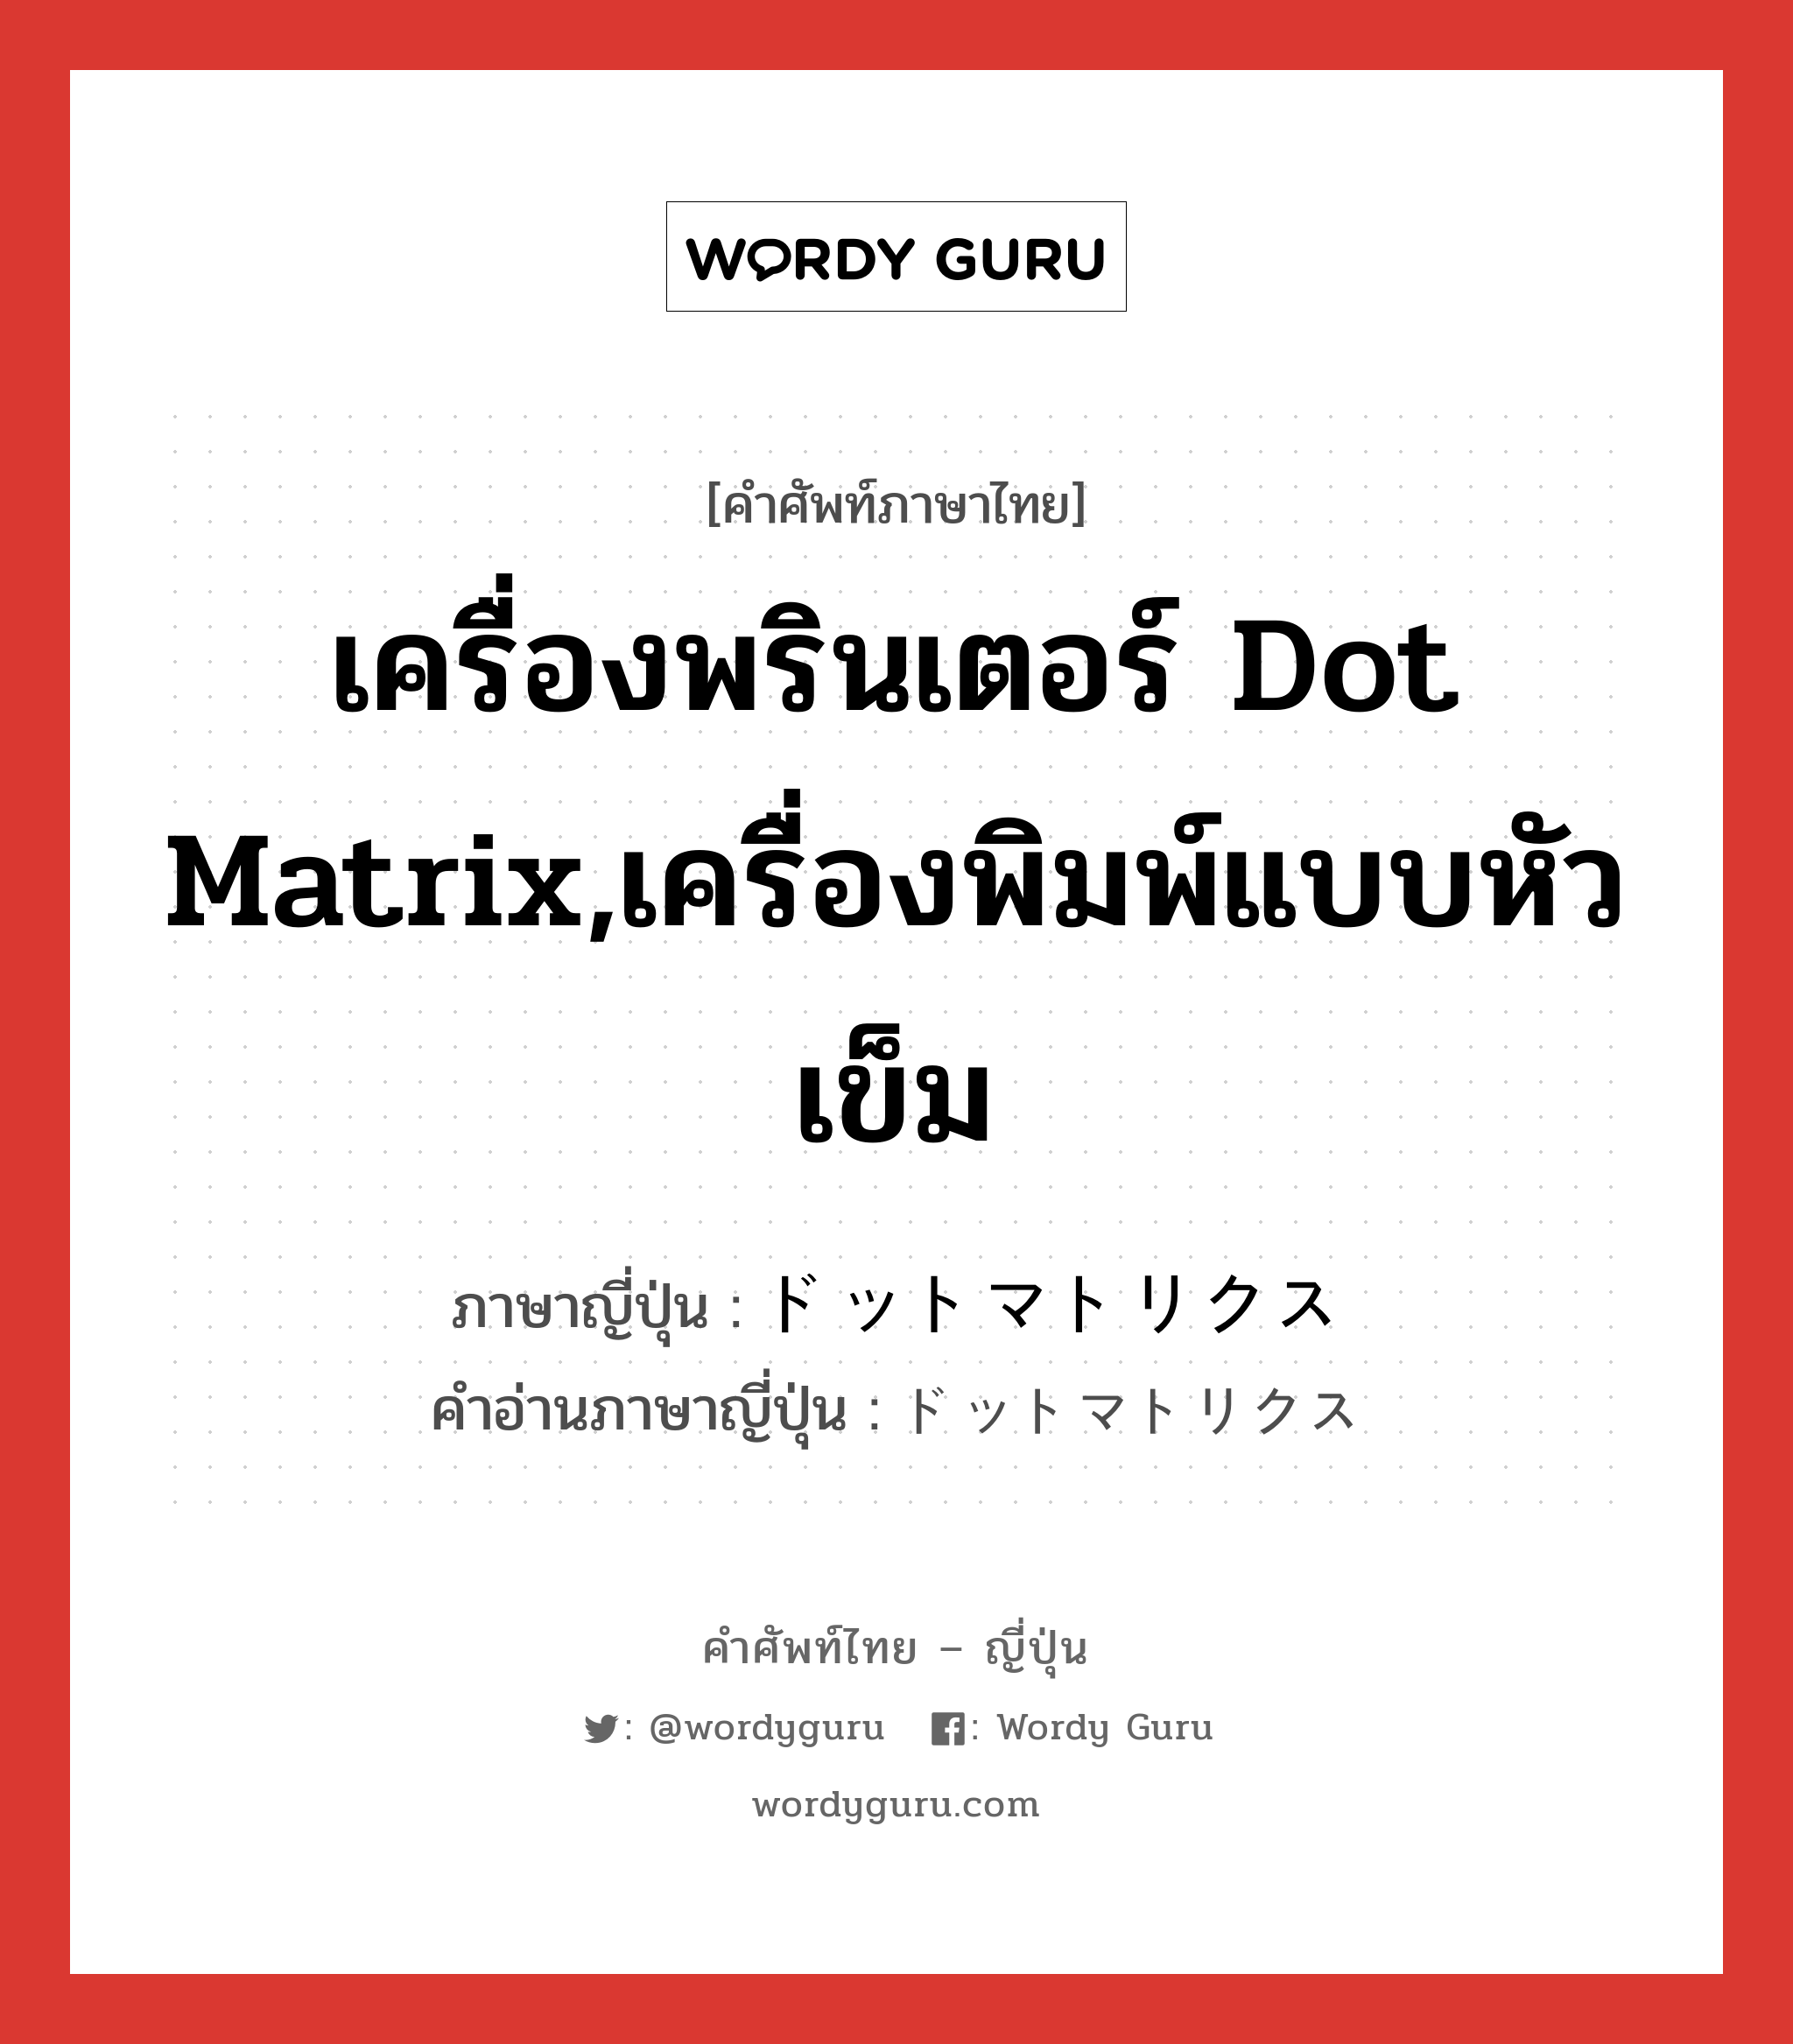 เครื่องพรินเตอร์ Dot Matrix,เครื่องพิมพ์แบบหัวเข็ม ภาษาญี่ปุ่นคืออะไร, คำศัพท์ภาษาไทย - ญี่ปุ่น เครื่องพรินเตอร์ Dot Matrix,เครื่องพิมพ์แบบหัวเข็ม ภาษาญี่ปุ่น ドットマトリクス คำอ่านภาษาญี่ปุ่น ドットマトリクス หมวด n หมวด n